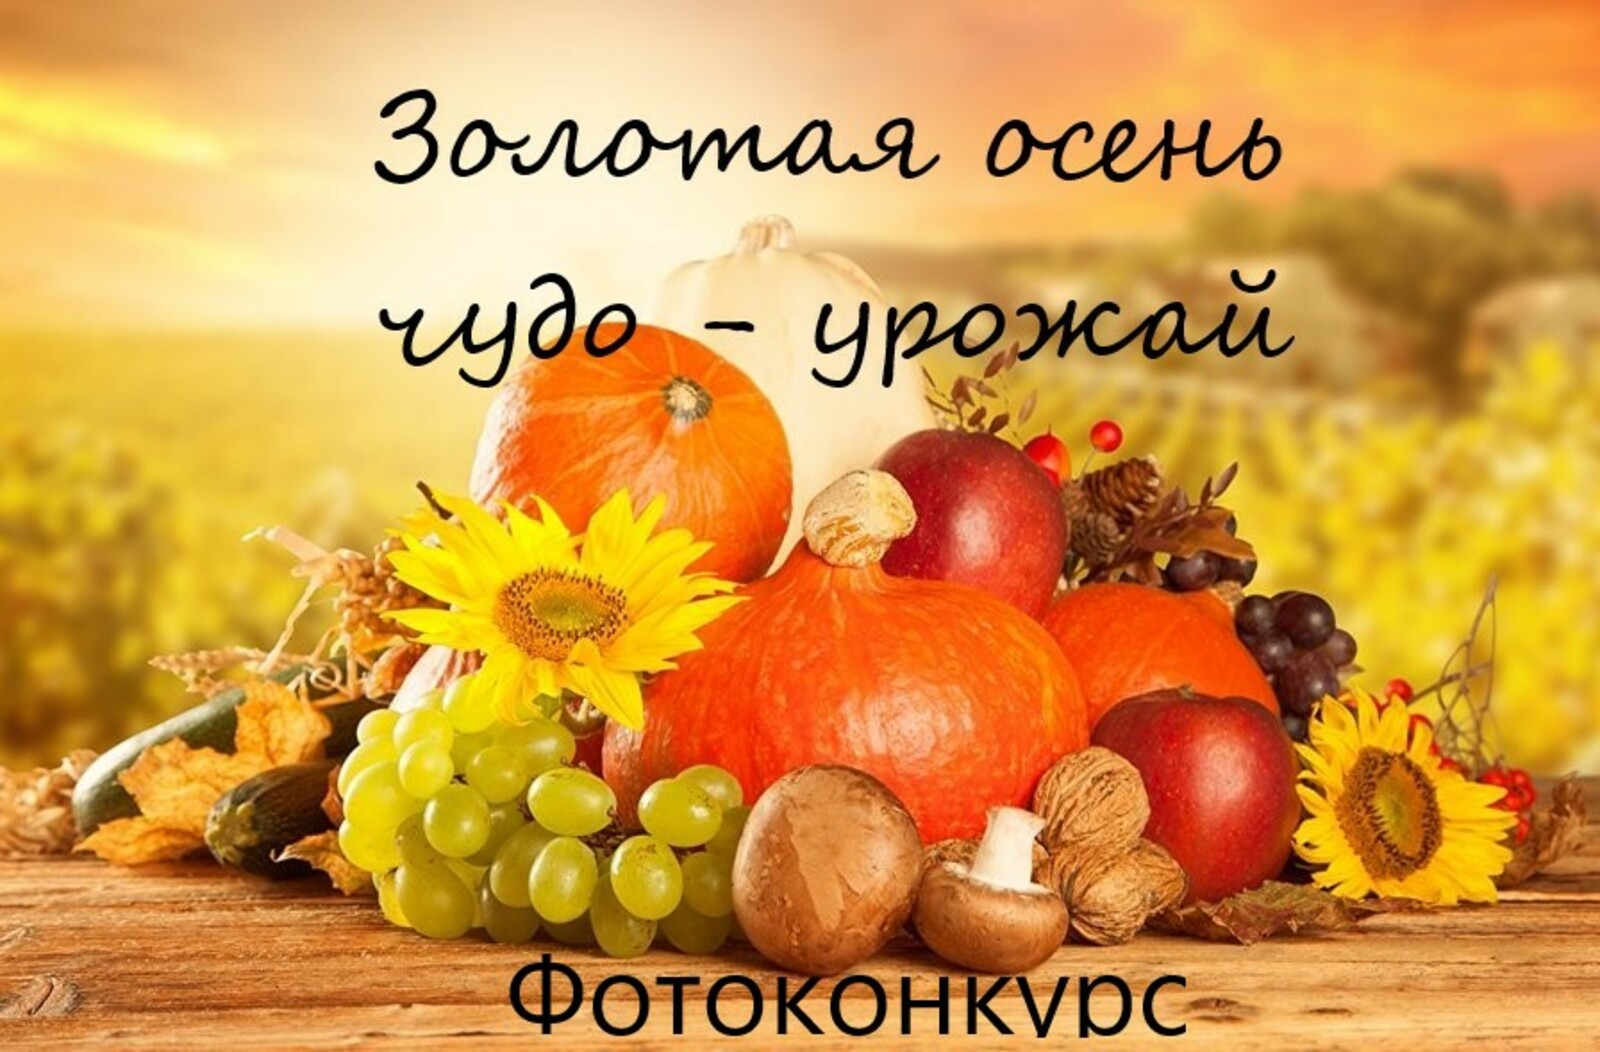 Объявляем фотоконкурс "Золотая осень: чудо-урожай" для жителей Кигинского района